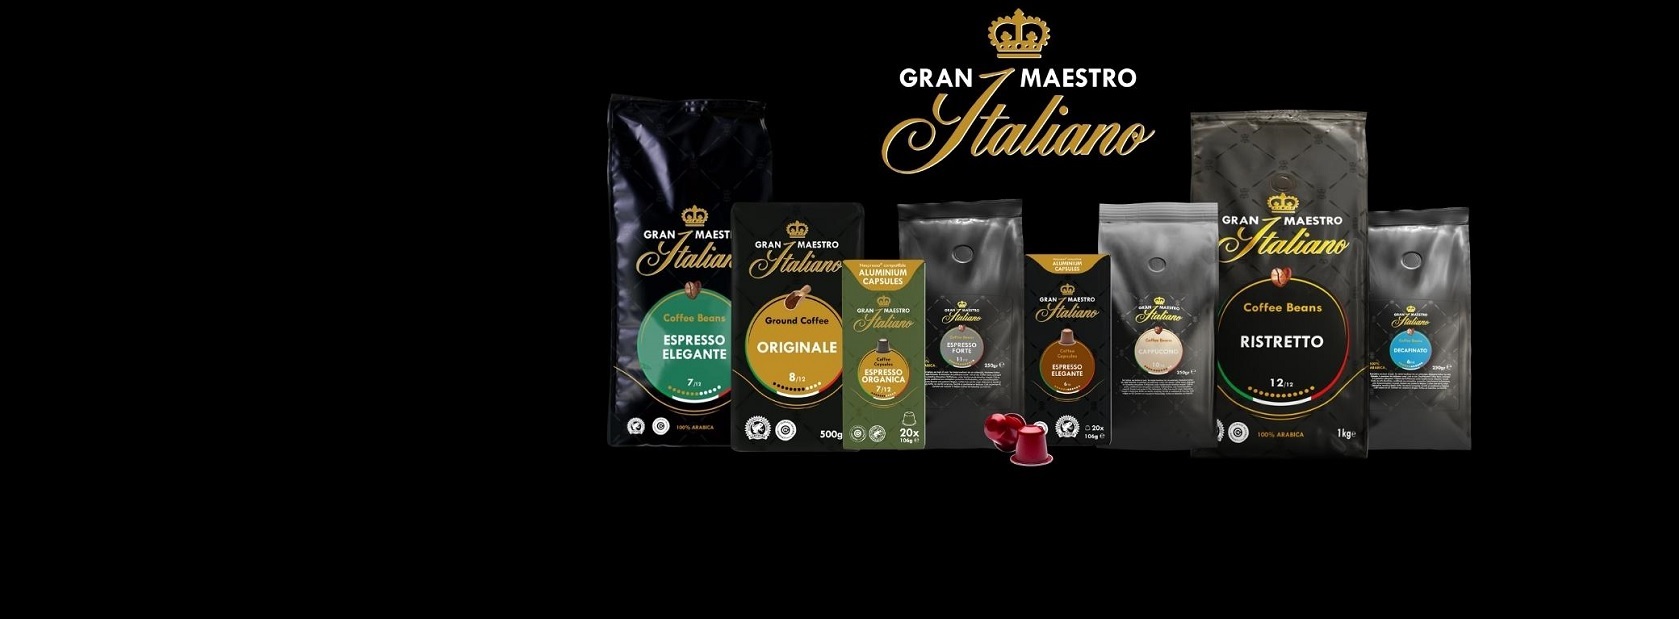 Gran Maestro Italiano koffie